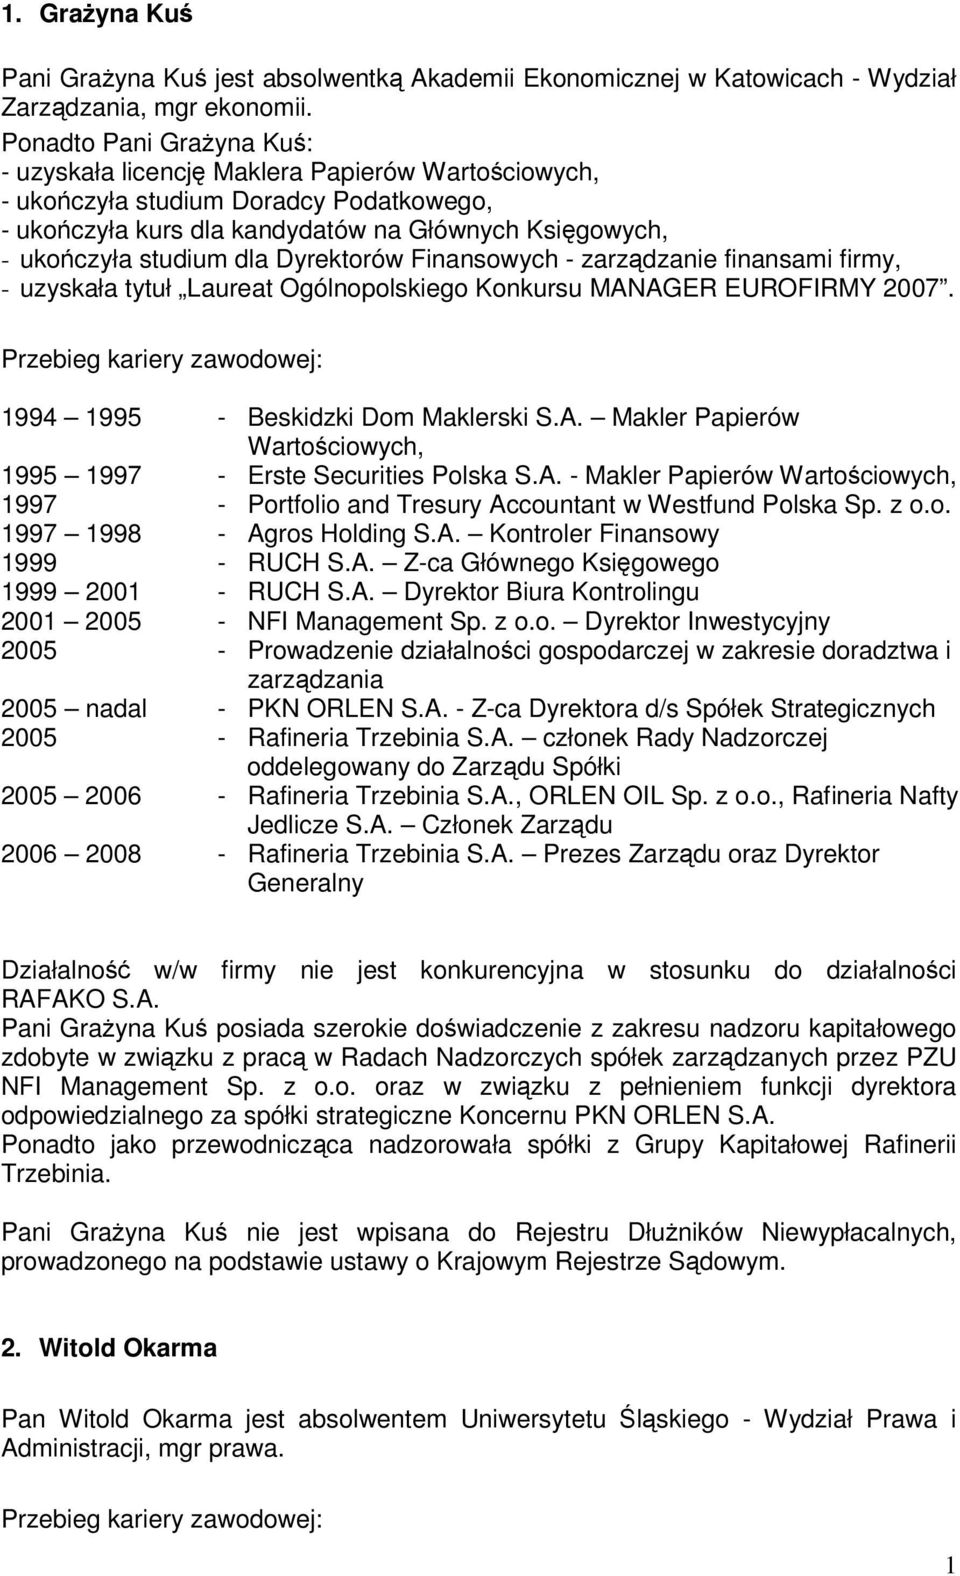 Dyrektorów Finansowych - zarzdzanie finansami firmy, - uzyskała tytuł Laureat Ogólnopolskiego Konkursu MANAGER EUROFIRMY 2007. 1994 1995 - Beskidzki Dom Maklerski S.A. Makler Papierów Wartociowych, 1995 1997 - Erste Securities Polska S.